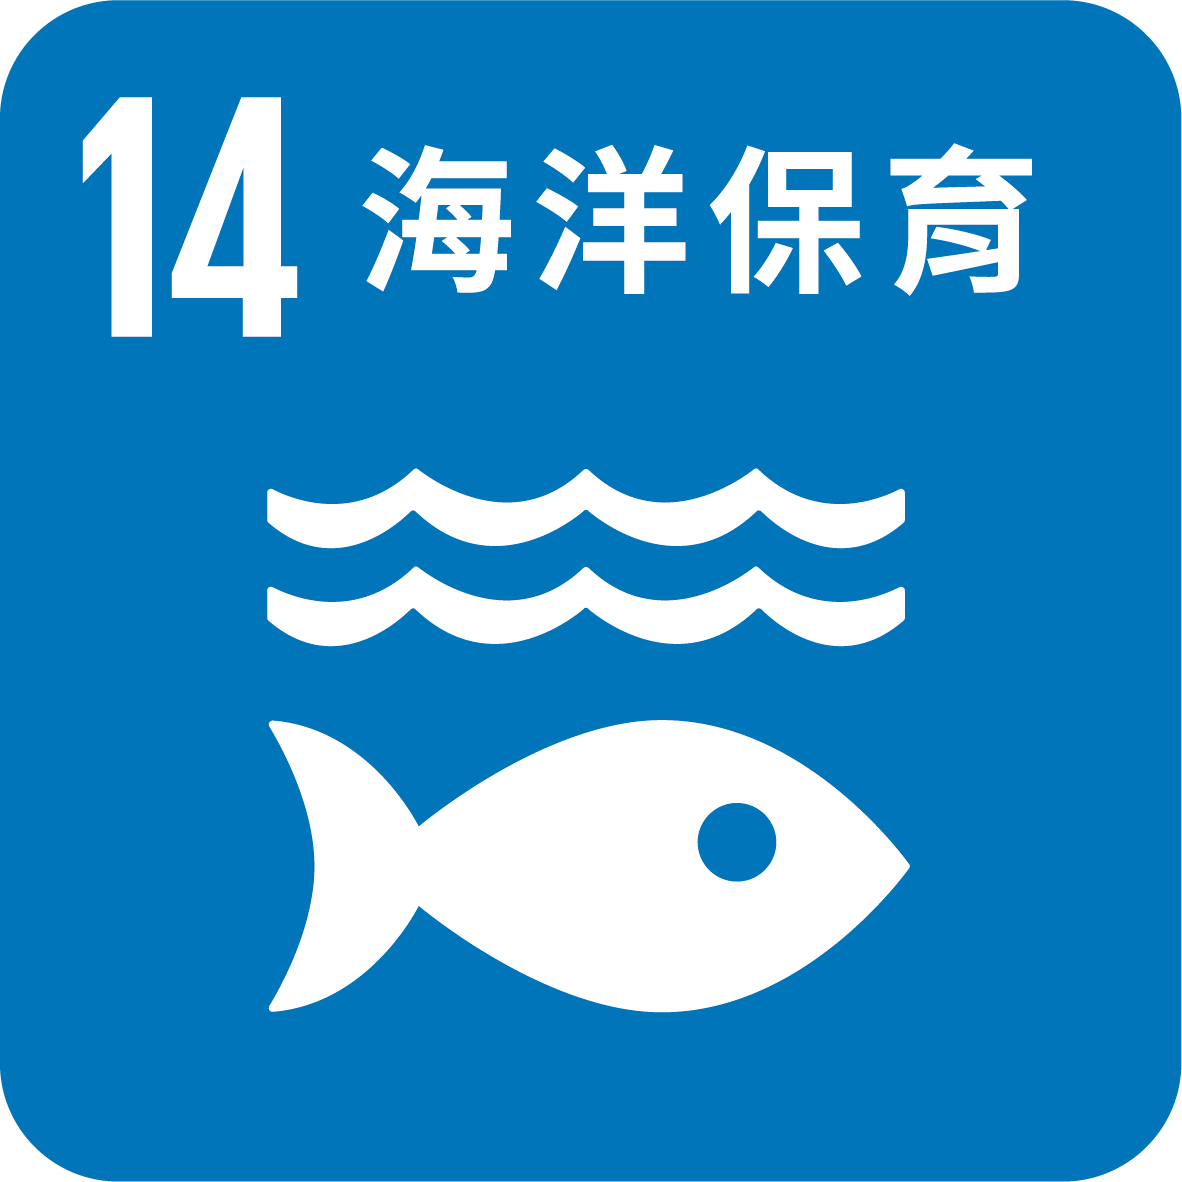 目標14_保護和永續利用海洋和海洋資源 促進永續發展